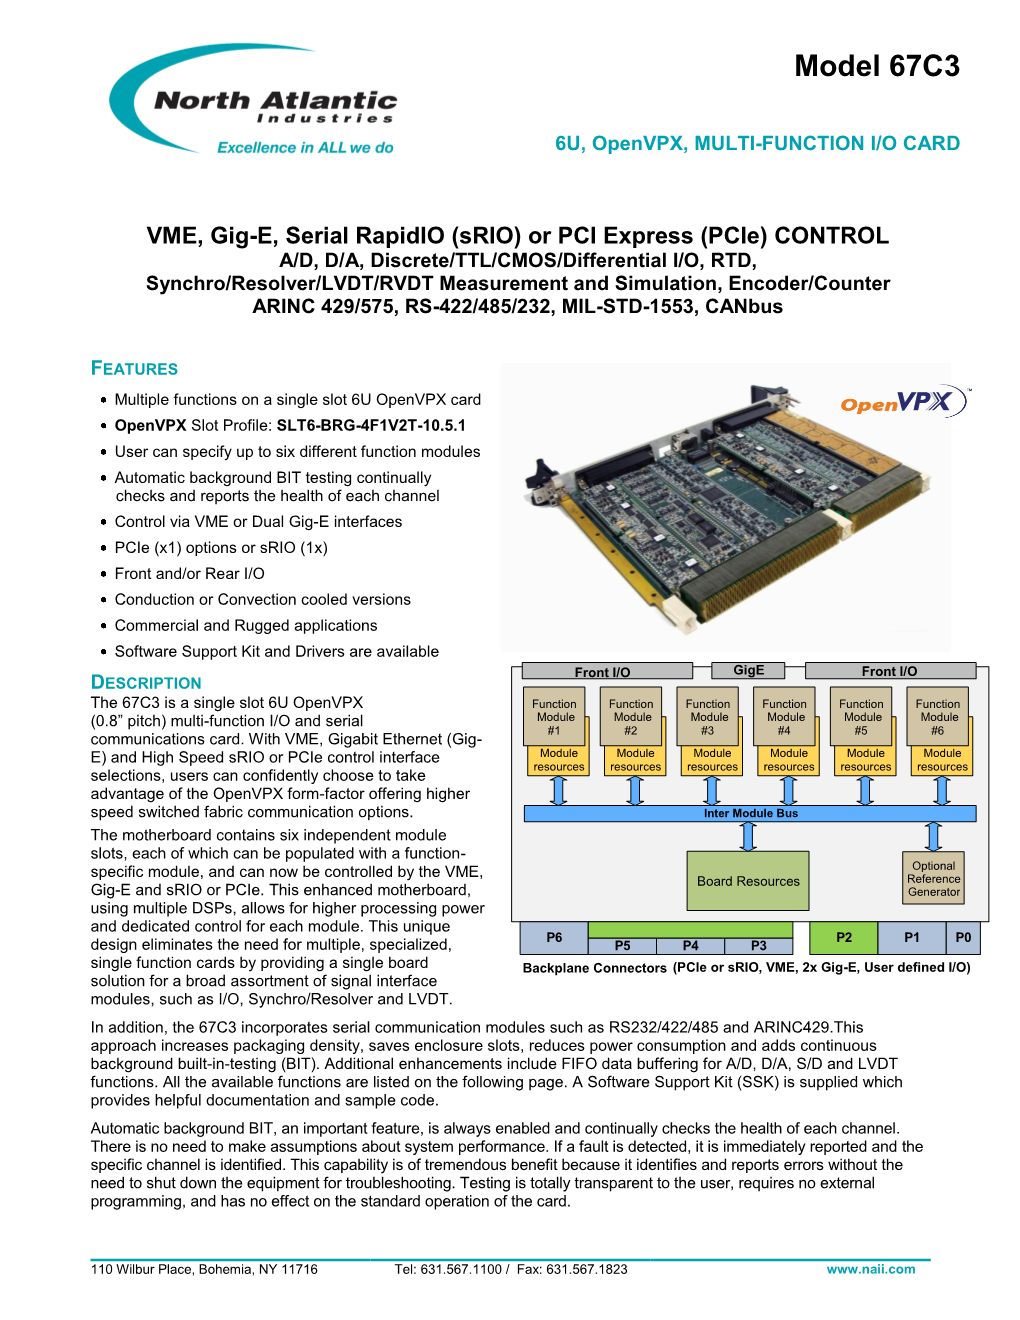 VME, Gig-E, Serial Rapidio (Srio) Or PCI Express (Pcie) CONTROL